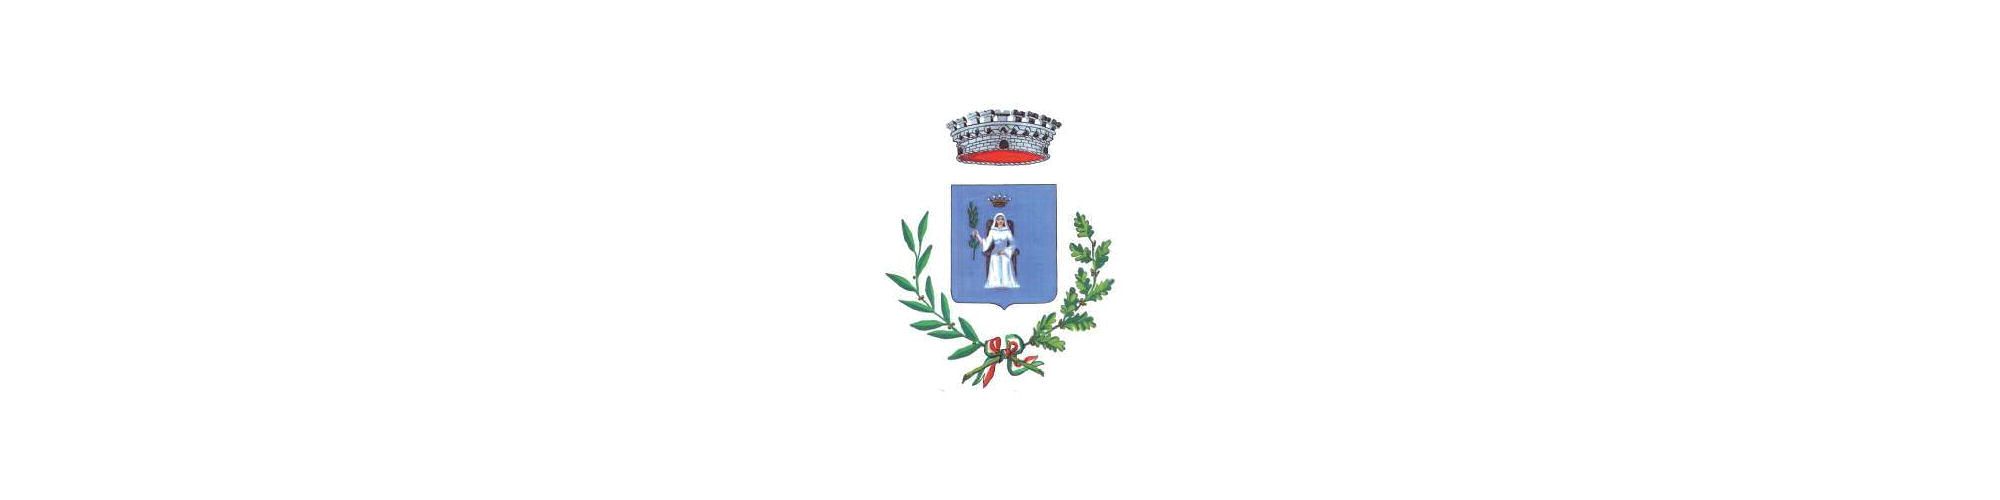 Caos Stir di Battipaglia, l’appello del Sindaco di Santa Marina Giovanni Fortunato al Governatore e al Vice Governatore della Regione Campania